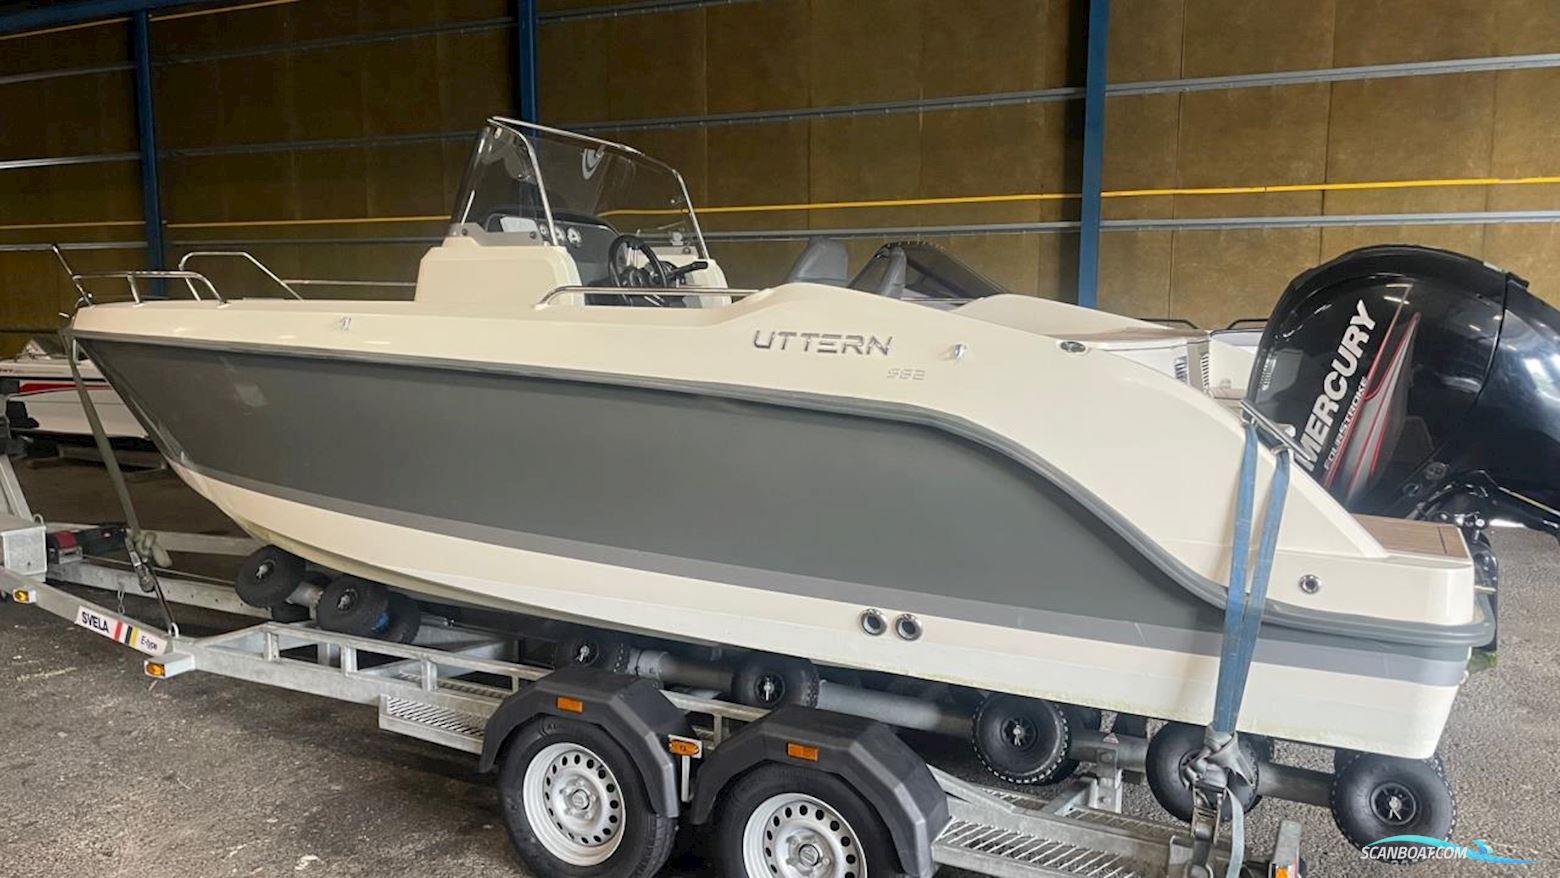 Uttern S62 Motorboot 2012, mit Mercury motor, Sweden